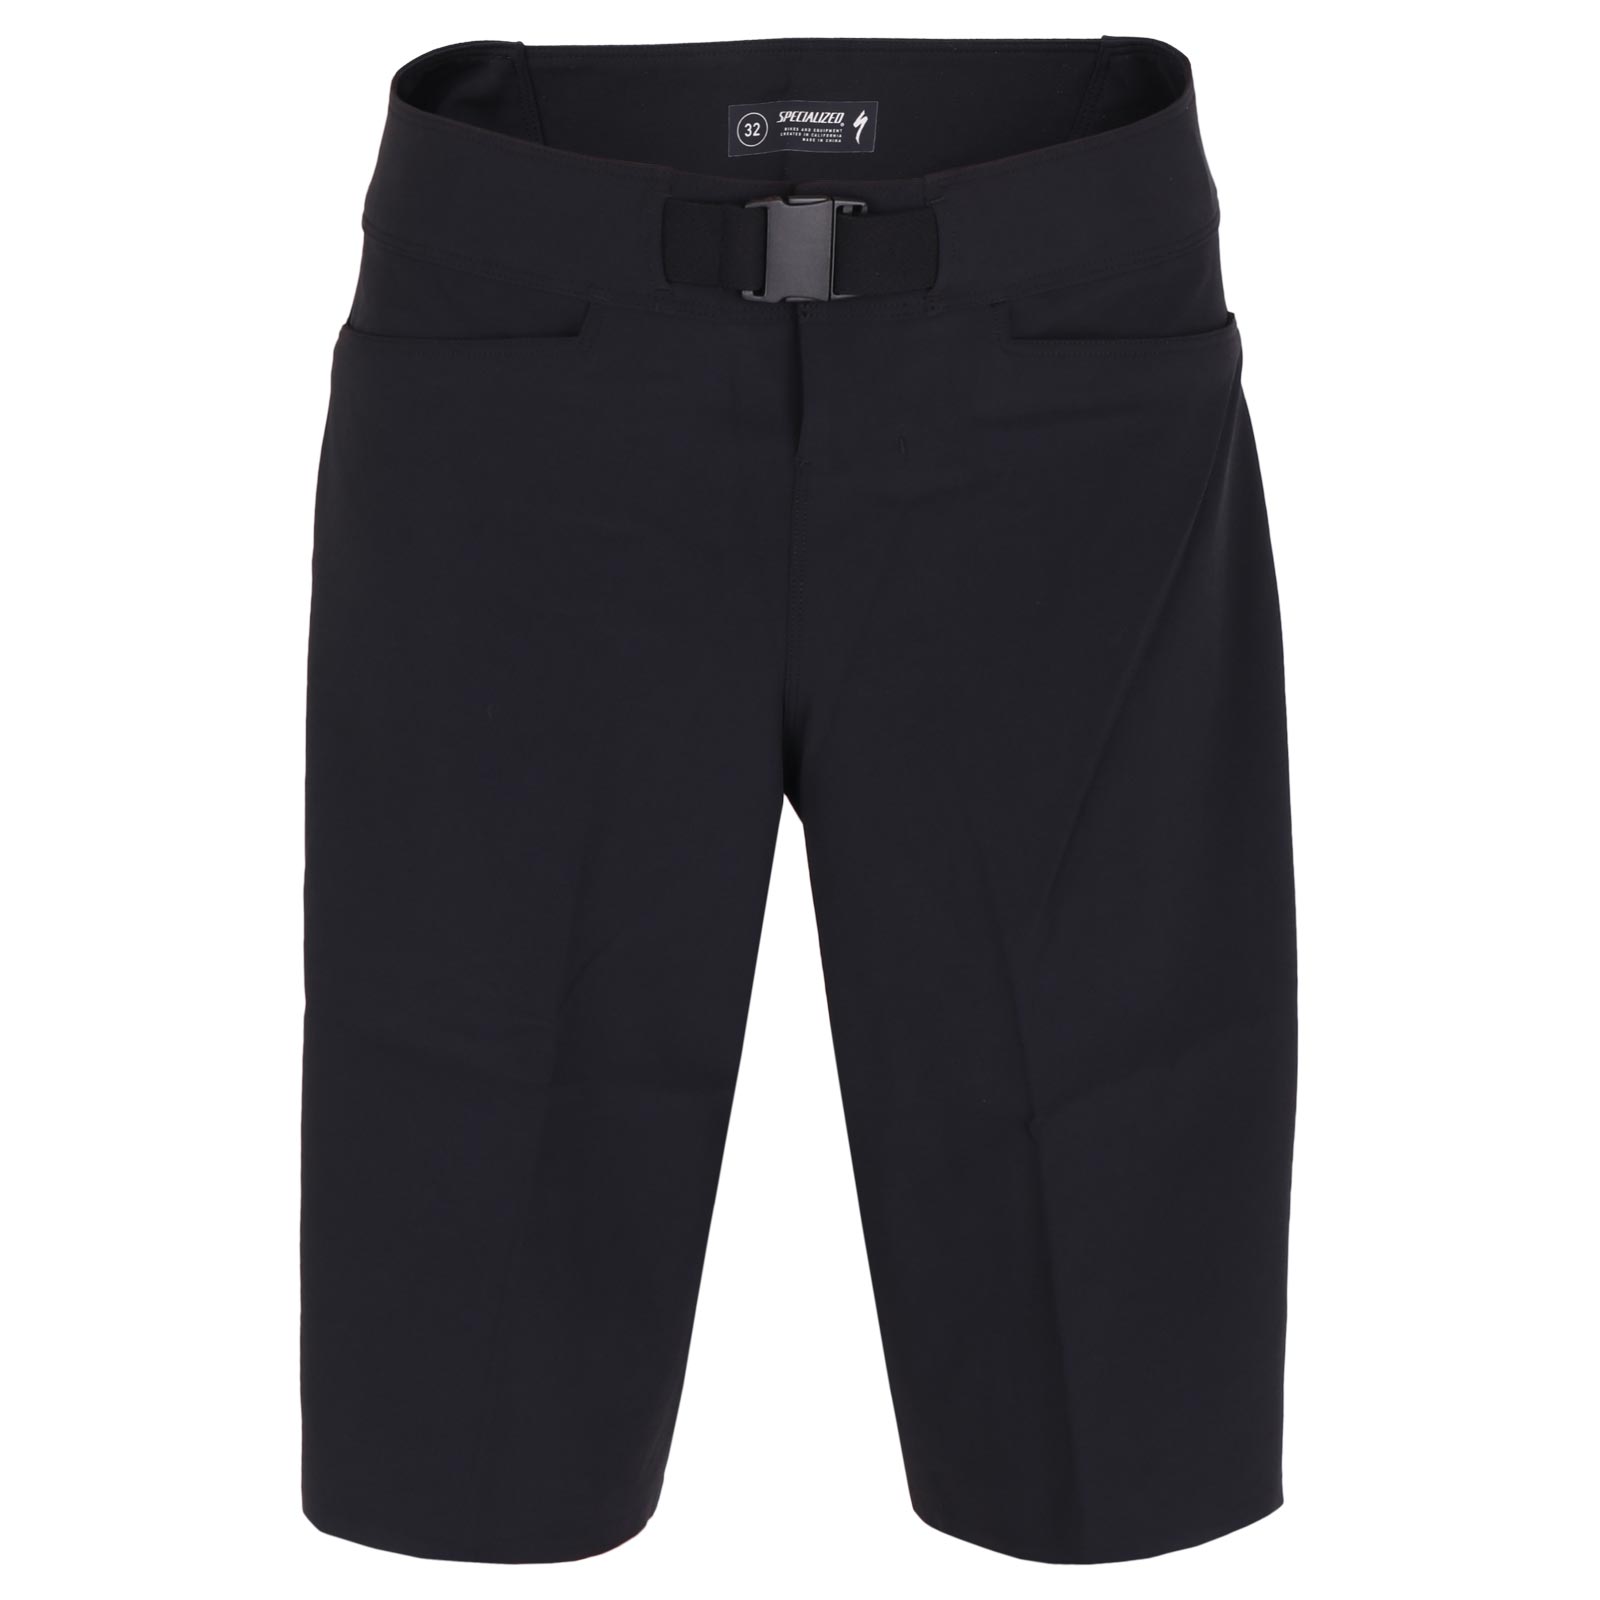 Produktbild von Specialized Trail Cordura Shorts - schwarz